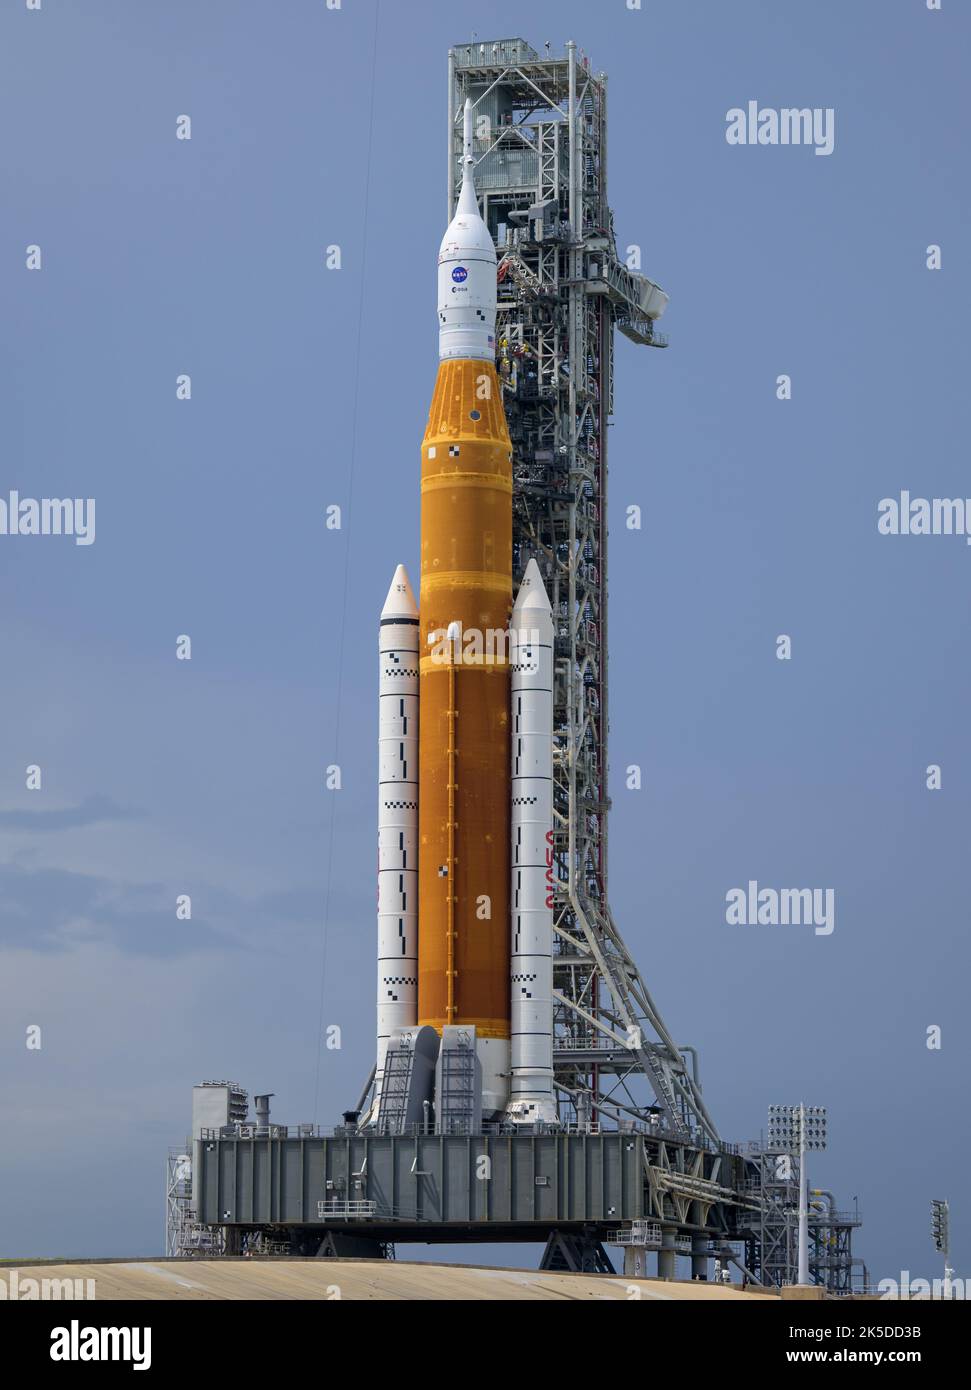 Il razzo Space Launch System (SLS) della NASA con la navicella spaziale  Orion a bordo viene visto in cima a un lanciatore mobile al Launch Pad 39B  mentre i preparativi per il